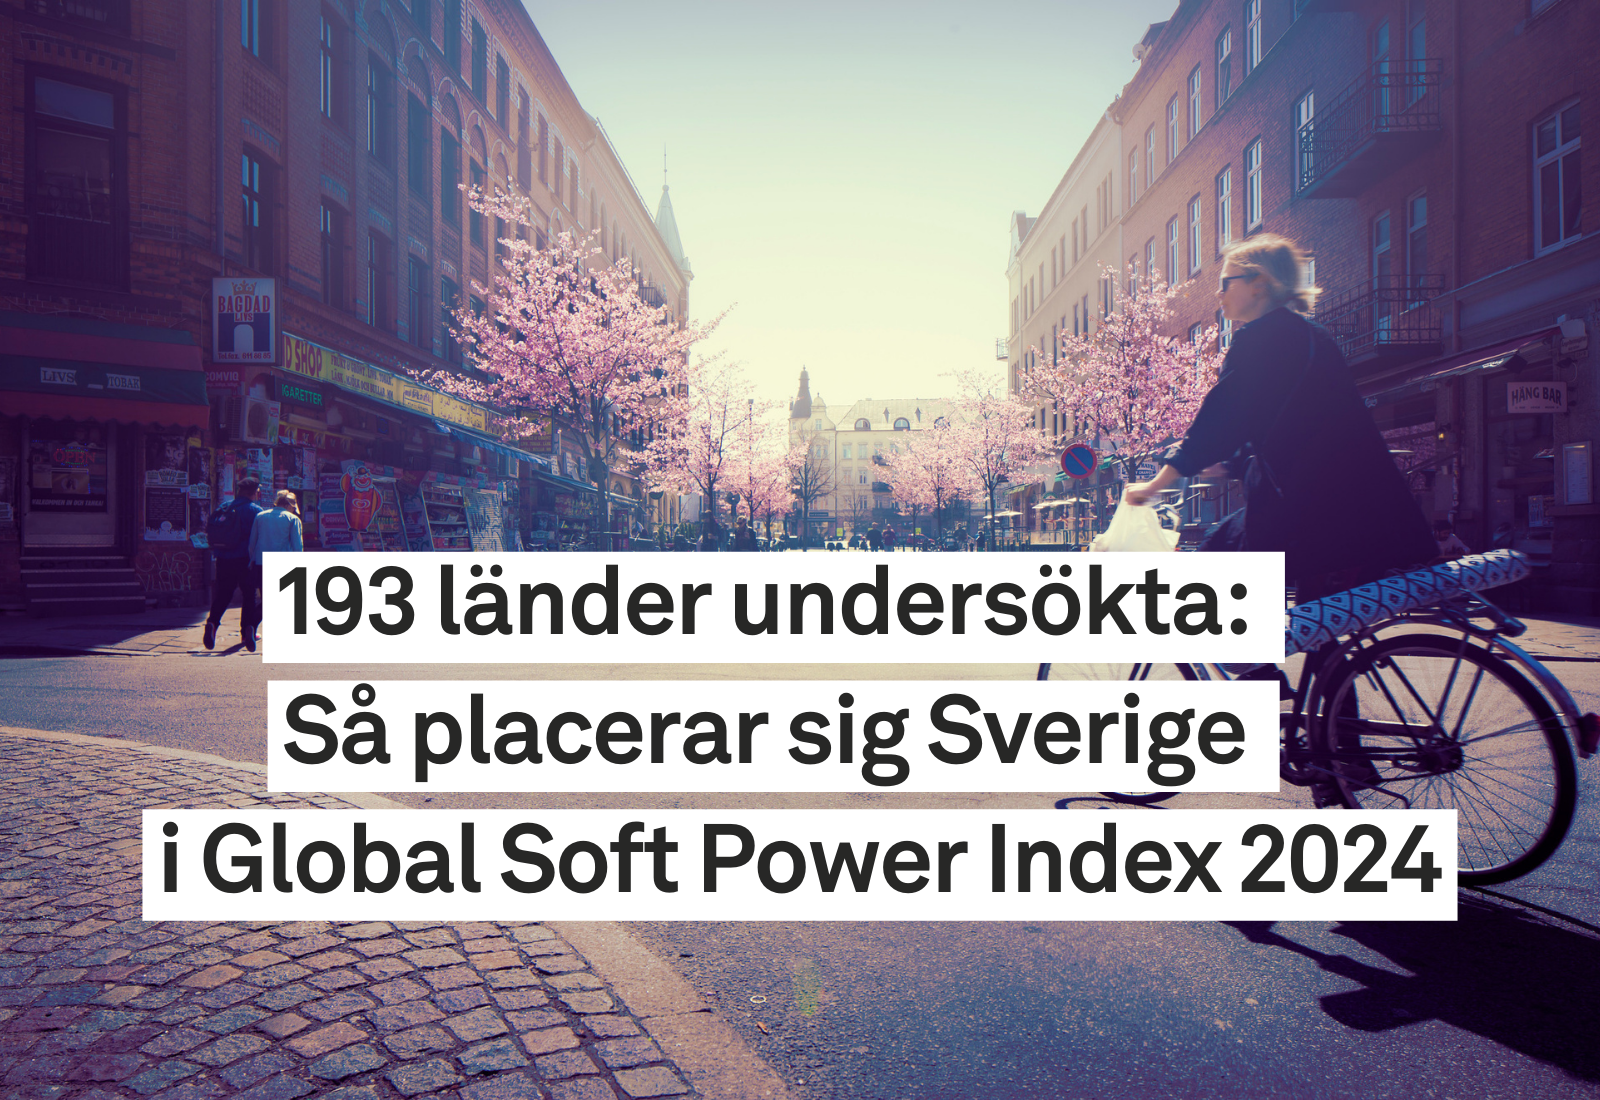 193 länder undersökta: Så placerar sig Sverige i Global Soft Power Index 2024